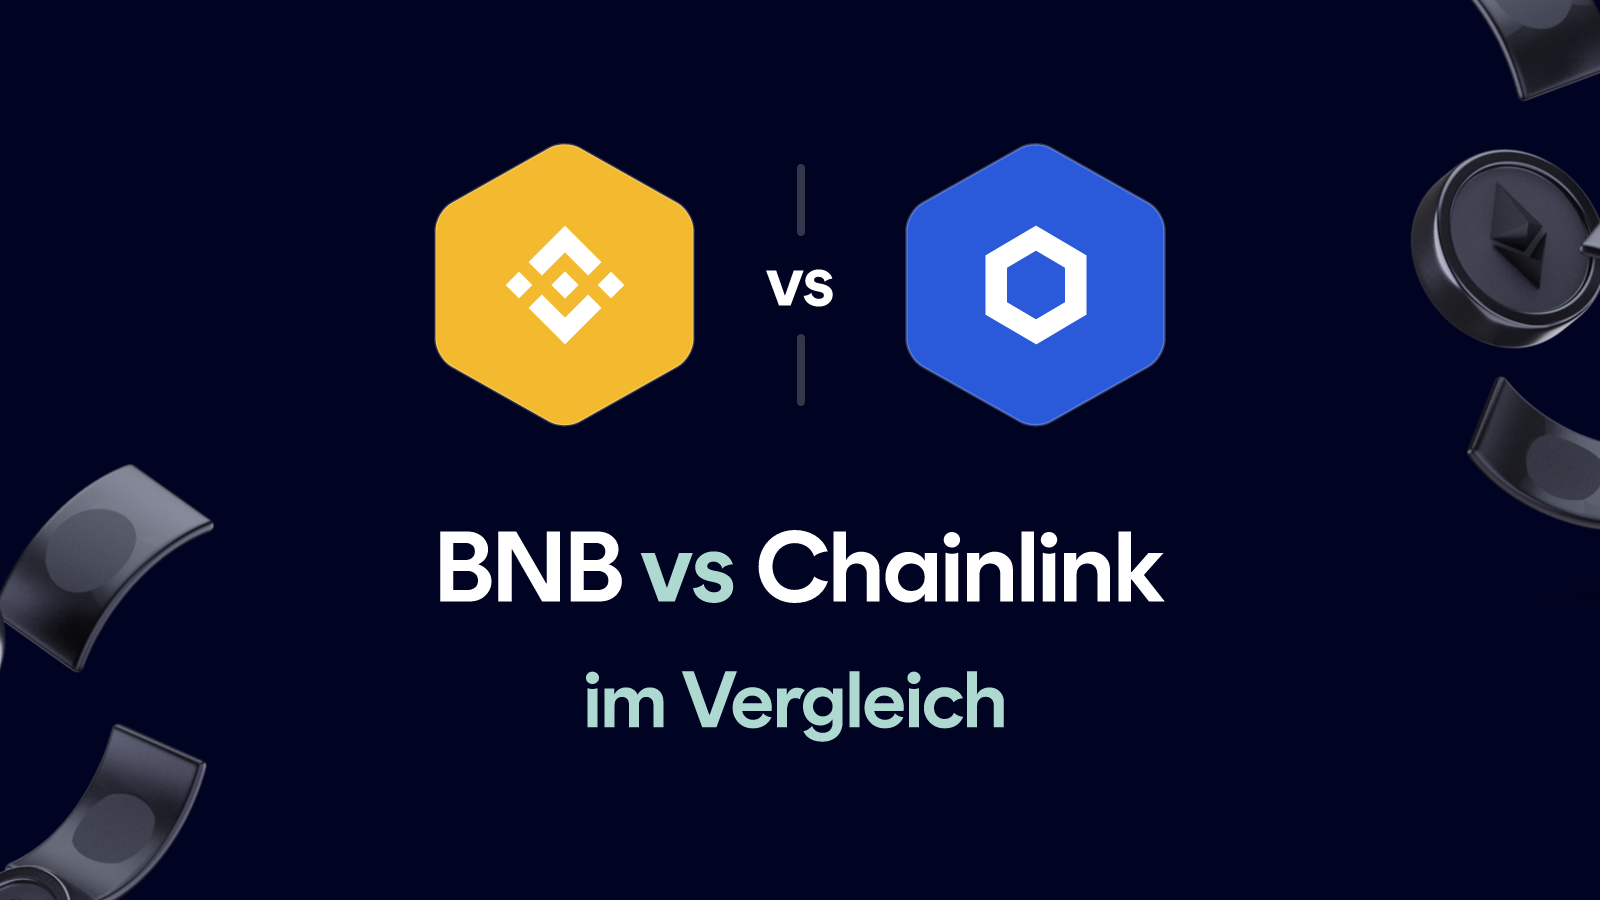 BNB vs Chainlink